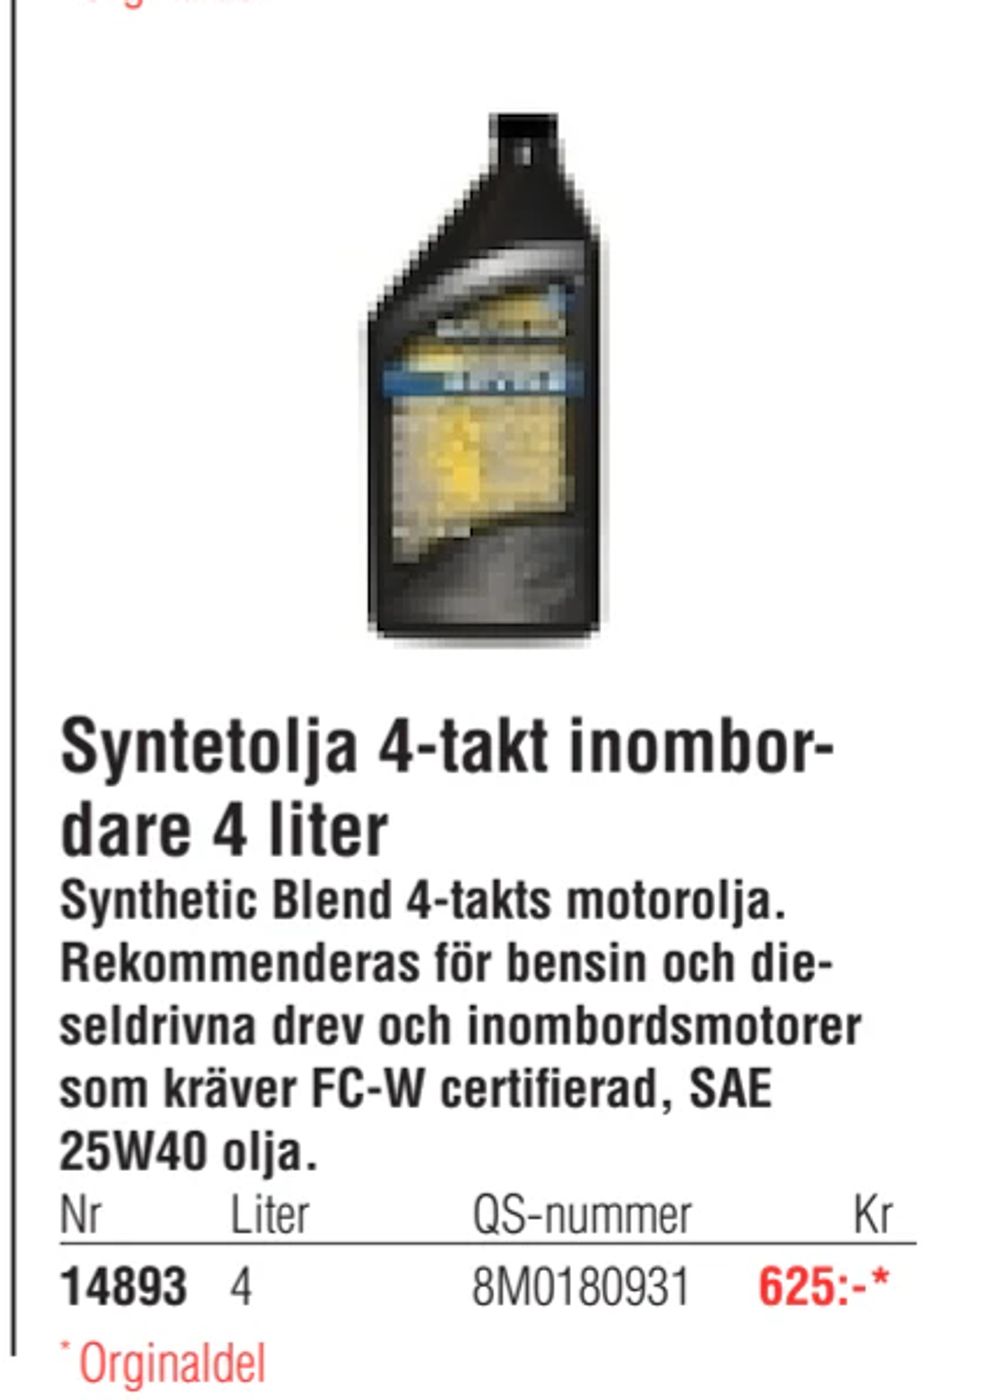 Erbjudanden på Syntetolja 4-takt inombordare 4 liter från Erlandsons Brygga för 625 kr